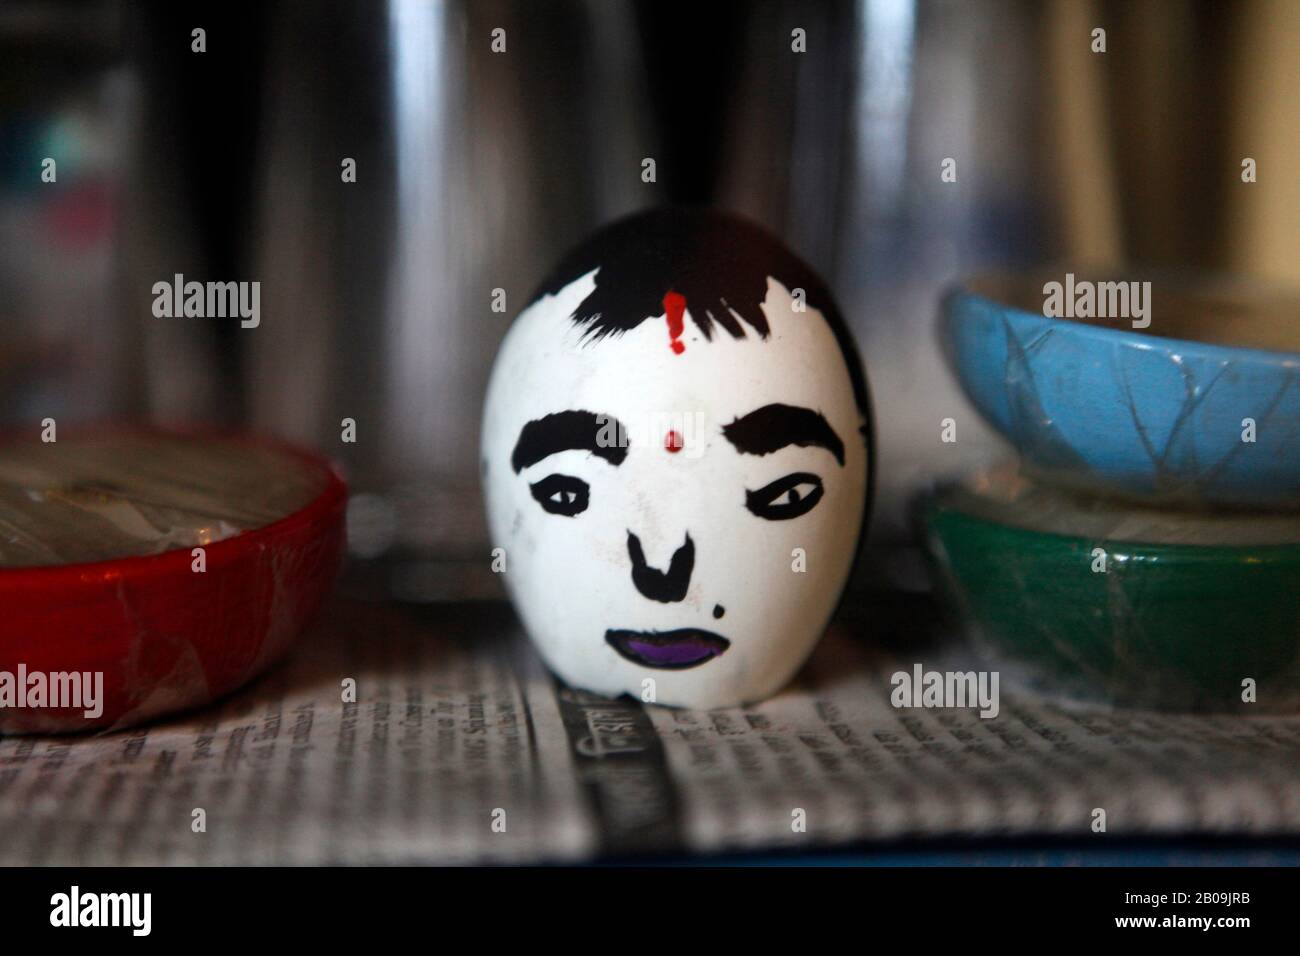 A painted egg-shell on display. Dhaka, Bangladesh. September 13, 2010. Stock Photo